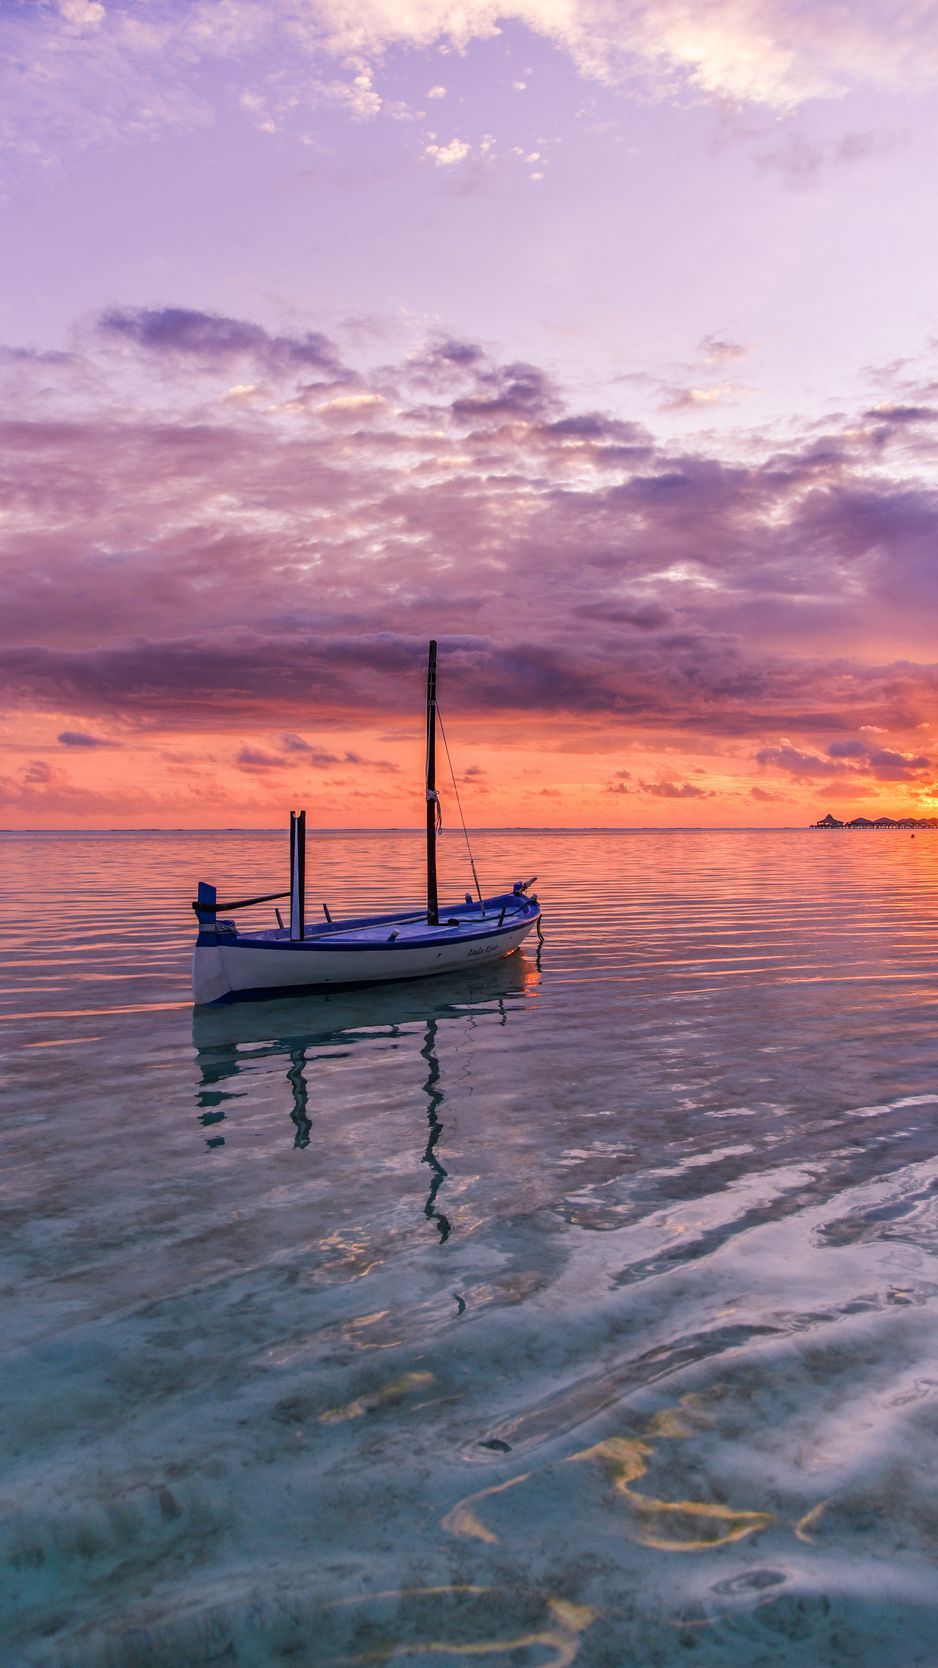 عکس زمینه شاهکار قایق چوبی در دریا زیر آسمان خوش رنگ غروب